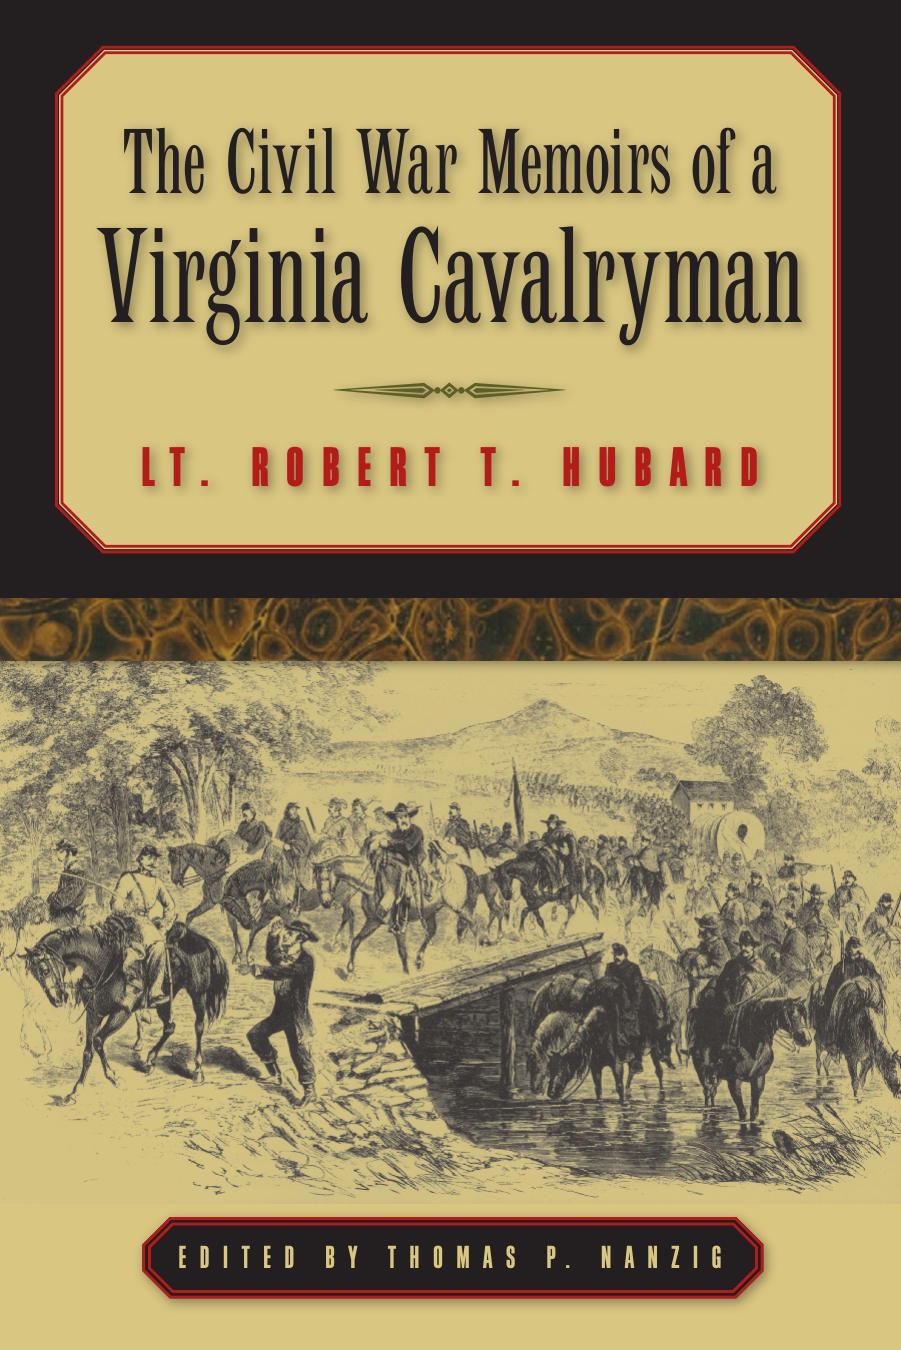 The Civil War Memoirs of a Virginia Cavalryman